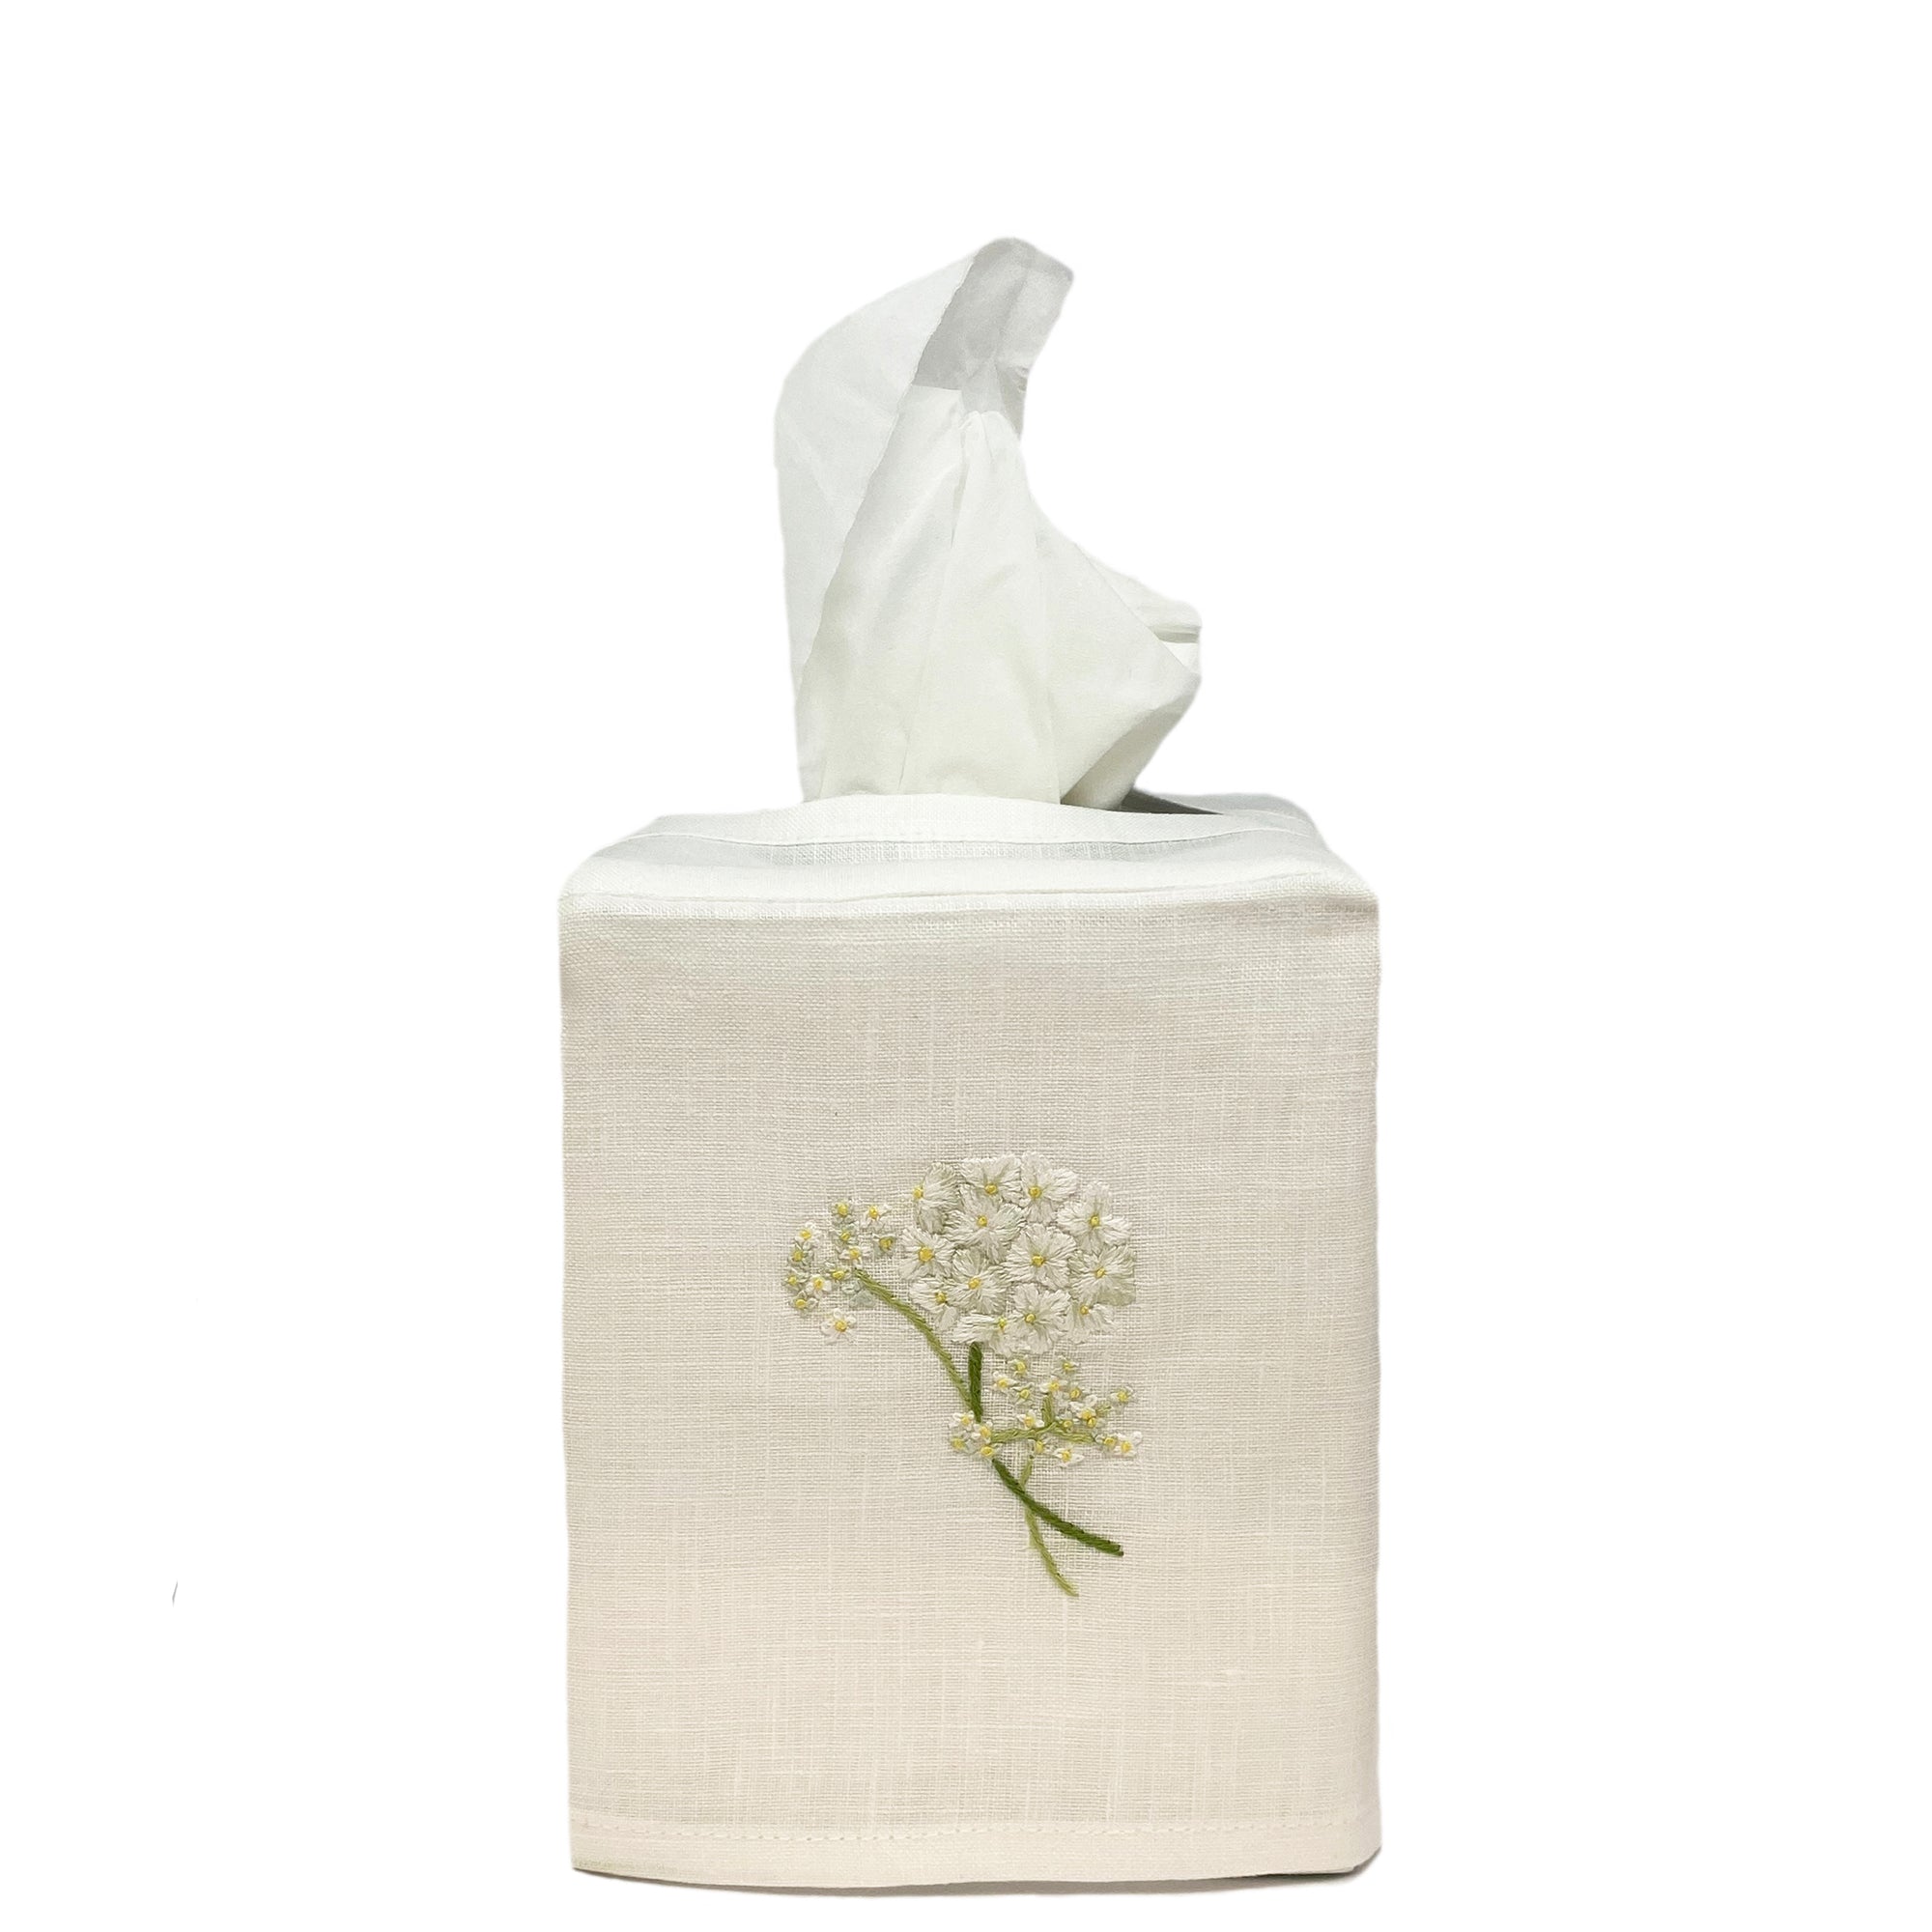 Linen Tissue Box Cover Hydrangea White